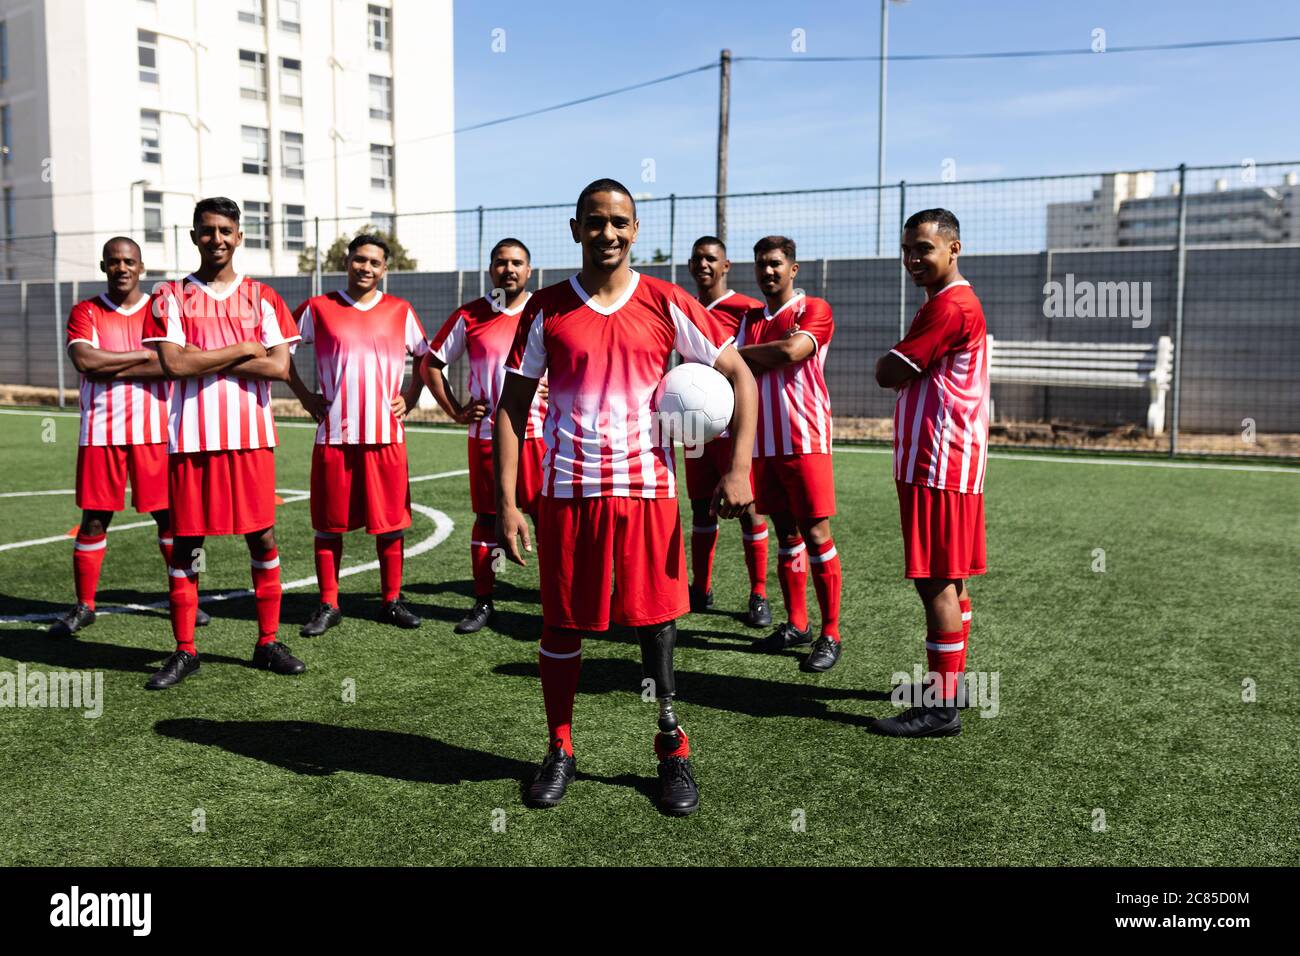 Portrait einer multiethnischen Mannschaft von fünf Mannschaften Fußballspieler in einem Mannschaftsstreifen Training auf einem Sportplatz in der Sonne, stehend mit einem Ball Stockfoto